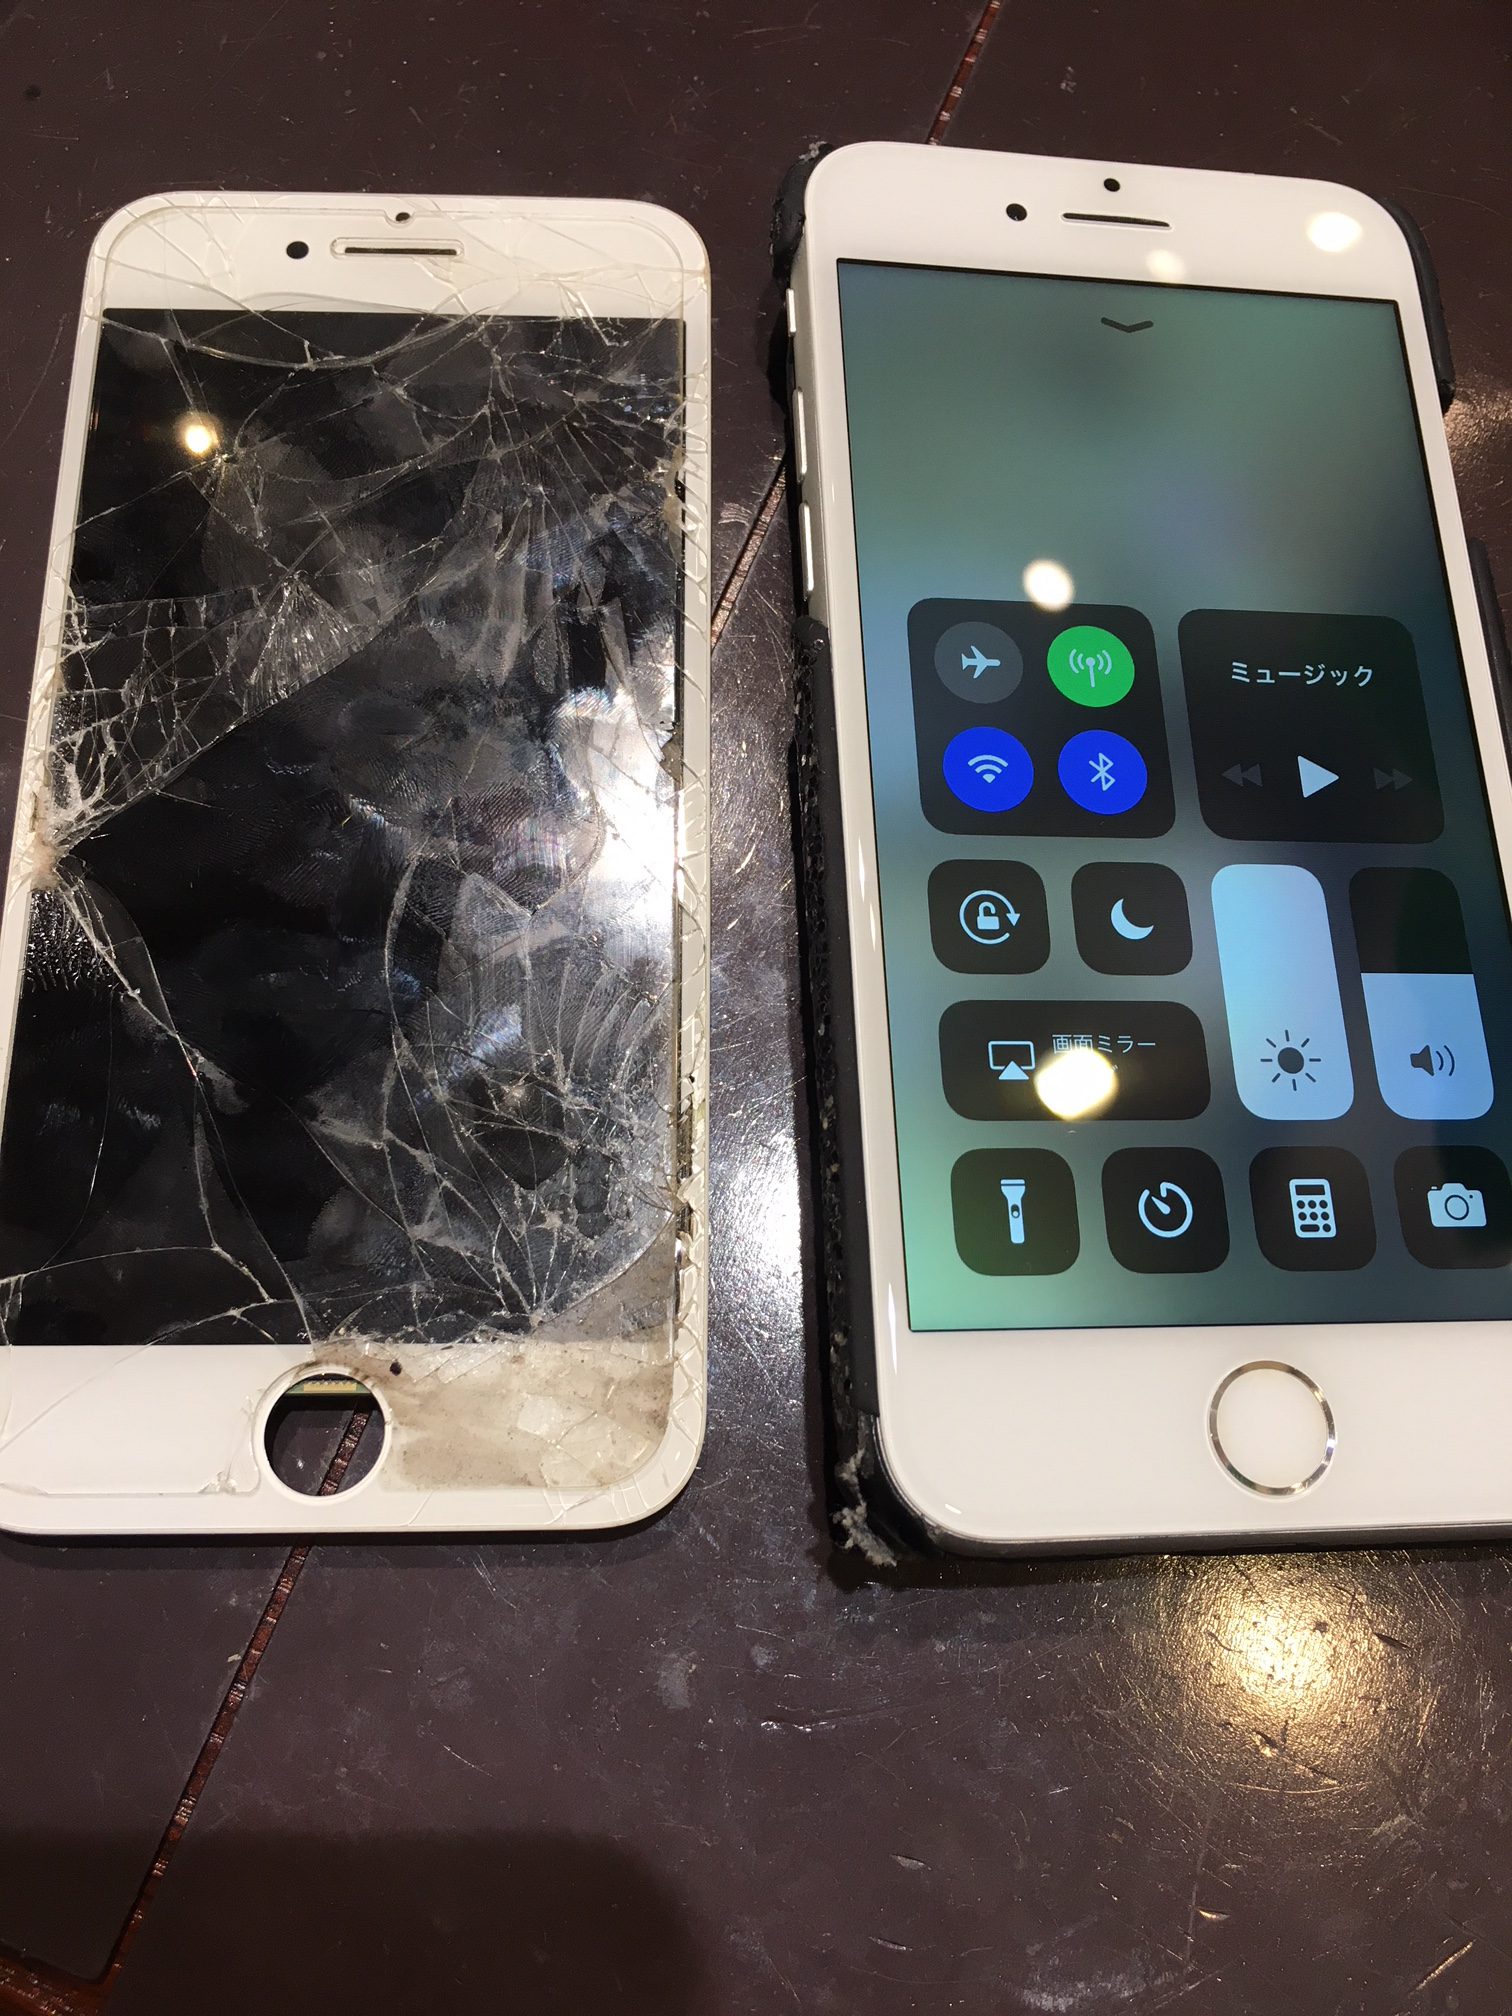 アイフォン修理尼崎伊丹店iphone6画面割れ修理!バキバキになった液晶も綺麗になりました、尼崎からお越しのお客様